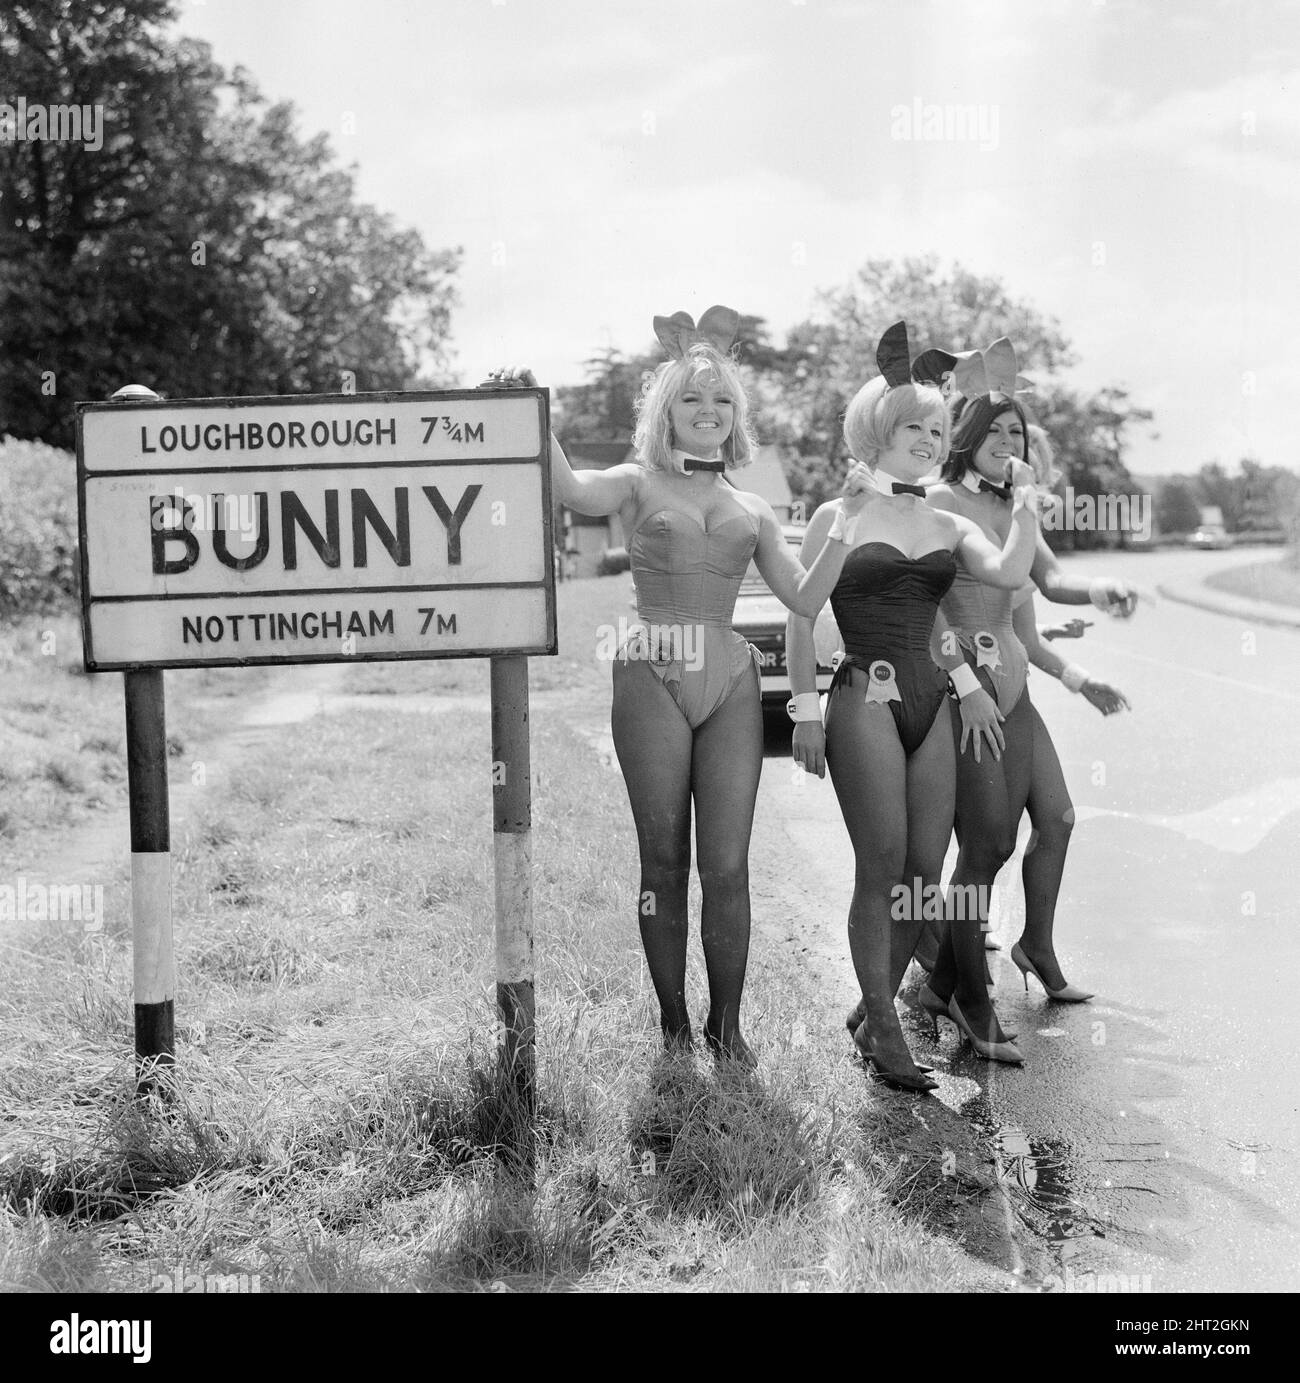 Bunny Girls du Playboy Club de Londres visitez Bunny, un village et une paroisse civile du quartier de Rushcliffe, dans le comté de Notinghamshire, en Angleterre, le 4th août 1966. Notre photo montre ... Les lapins qui cherchent à s'atteler à la randonnée en faisant un ascenseur. Banque D'Images